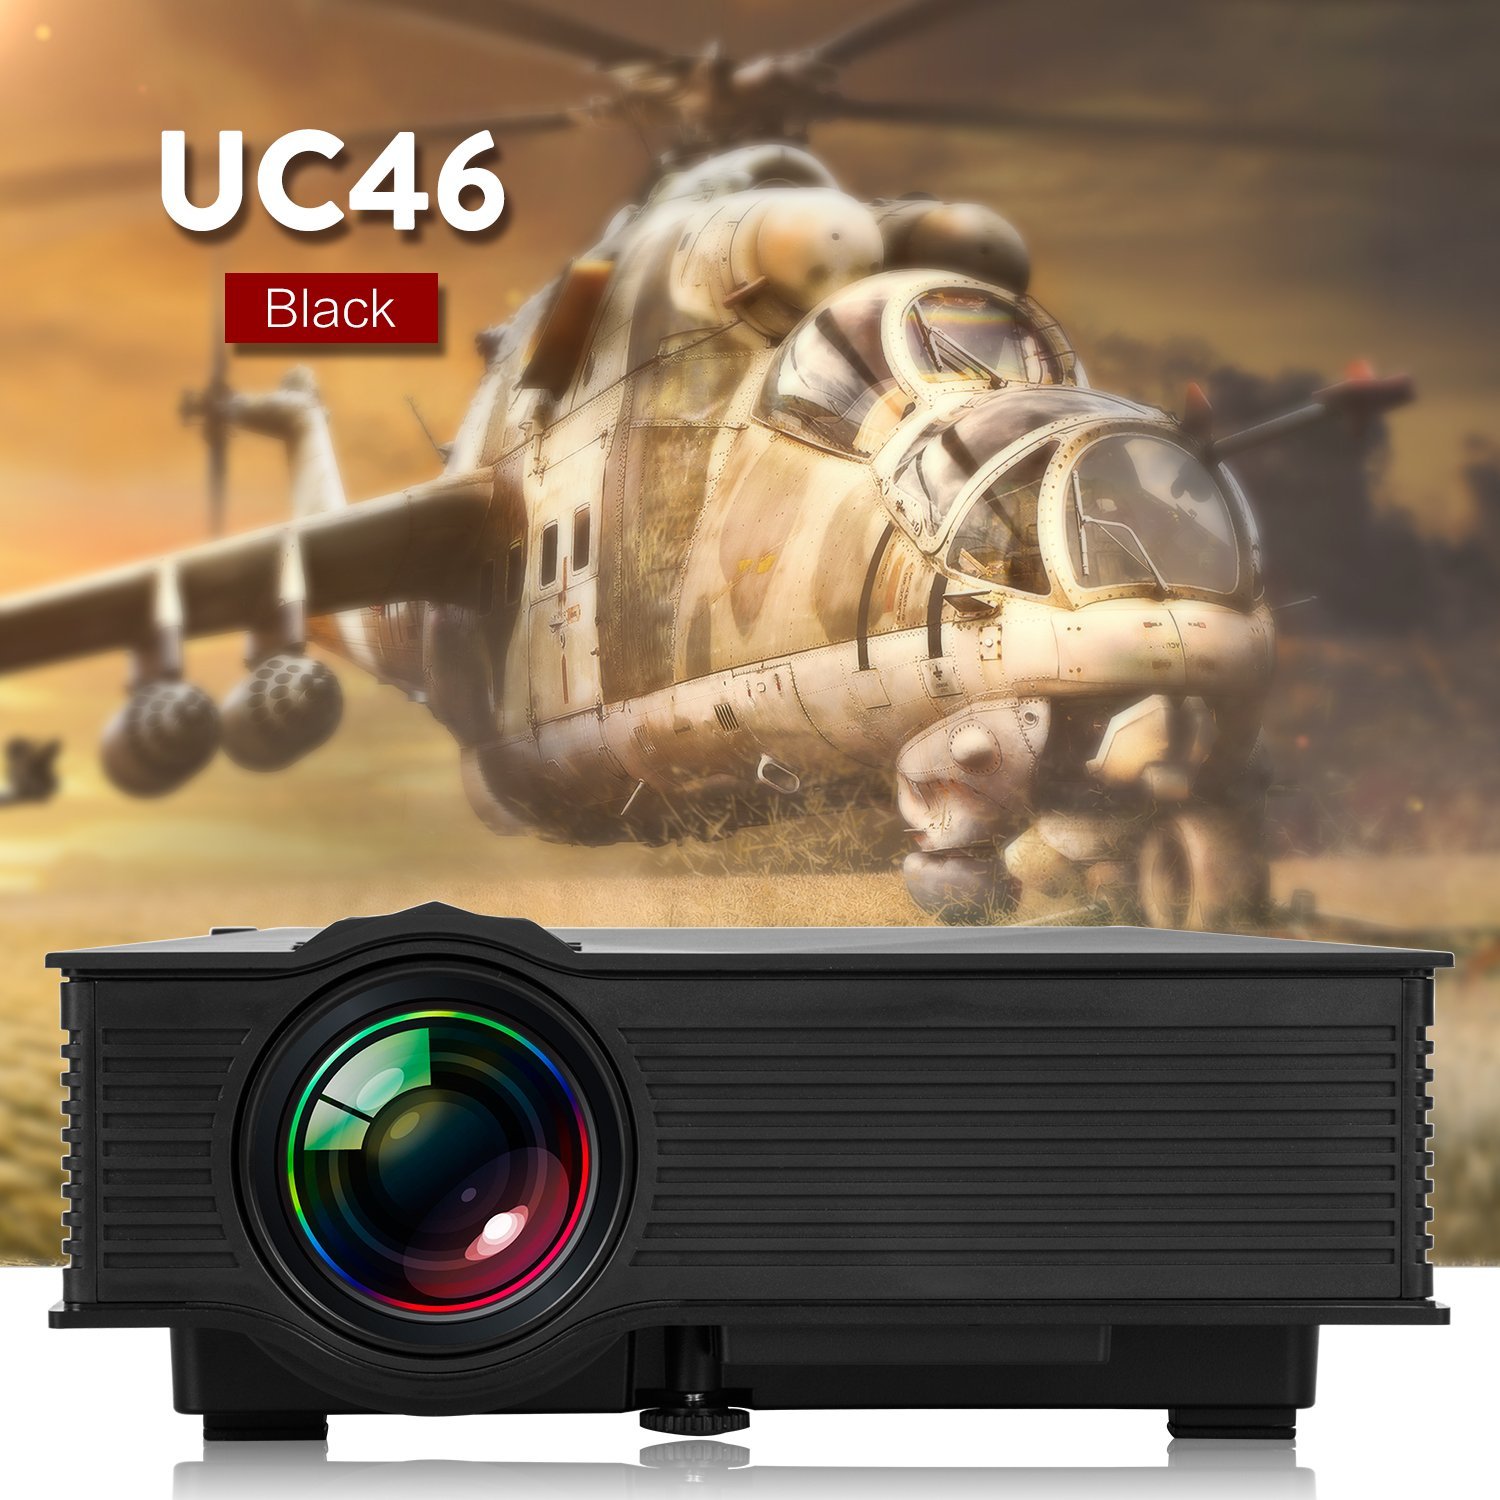 WEINAS UC46, un mini proyector con WiFi, HDMI y puertos USB por menos de 80€